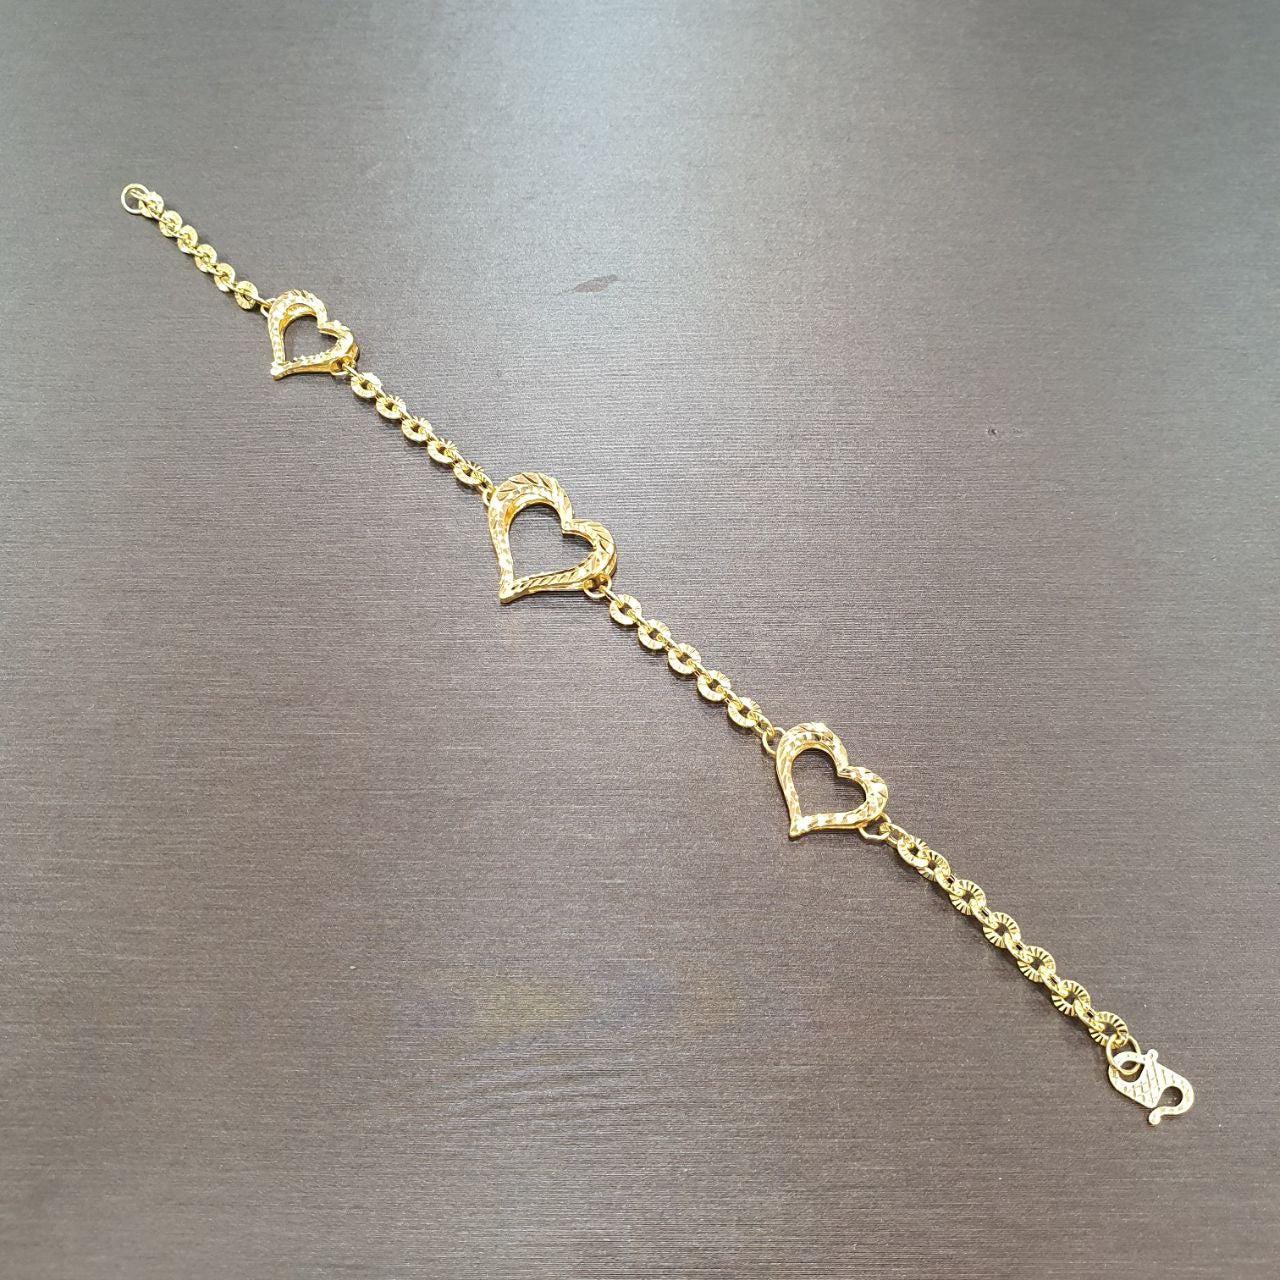 22K / 916 Gold Heart shiny bracelet-Bracelets-Best Gold Shop